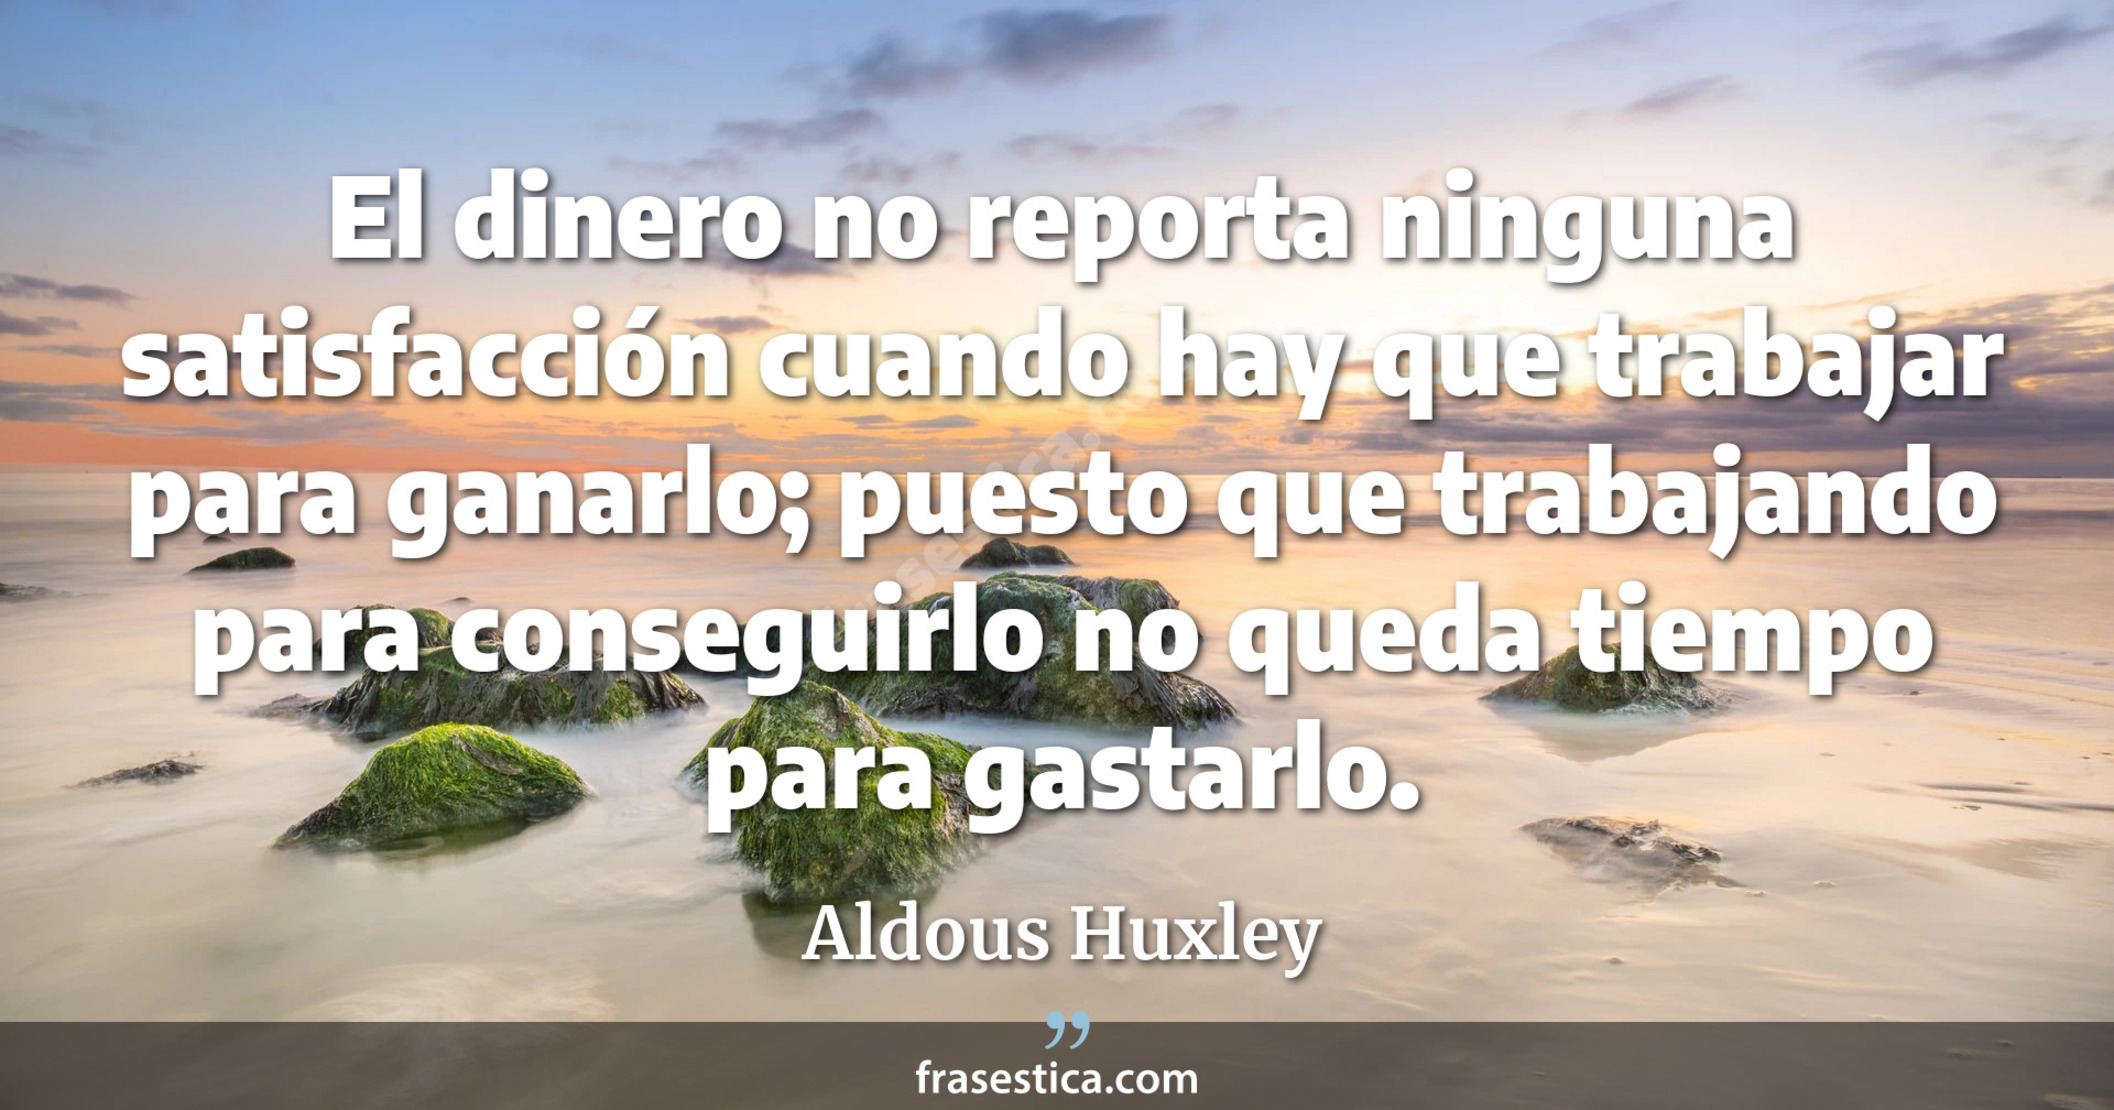 El dinero no reporta ninguna satisfacción cuando hay que trabajar para ganarlo; puesto que trabajando para conseguirlo no queda tiempo para gastarlo. - Aldous Huxley